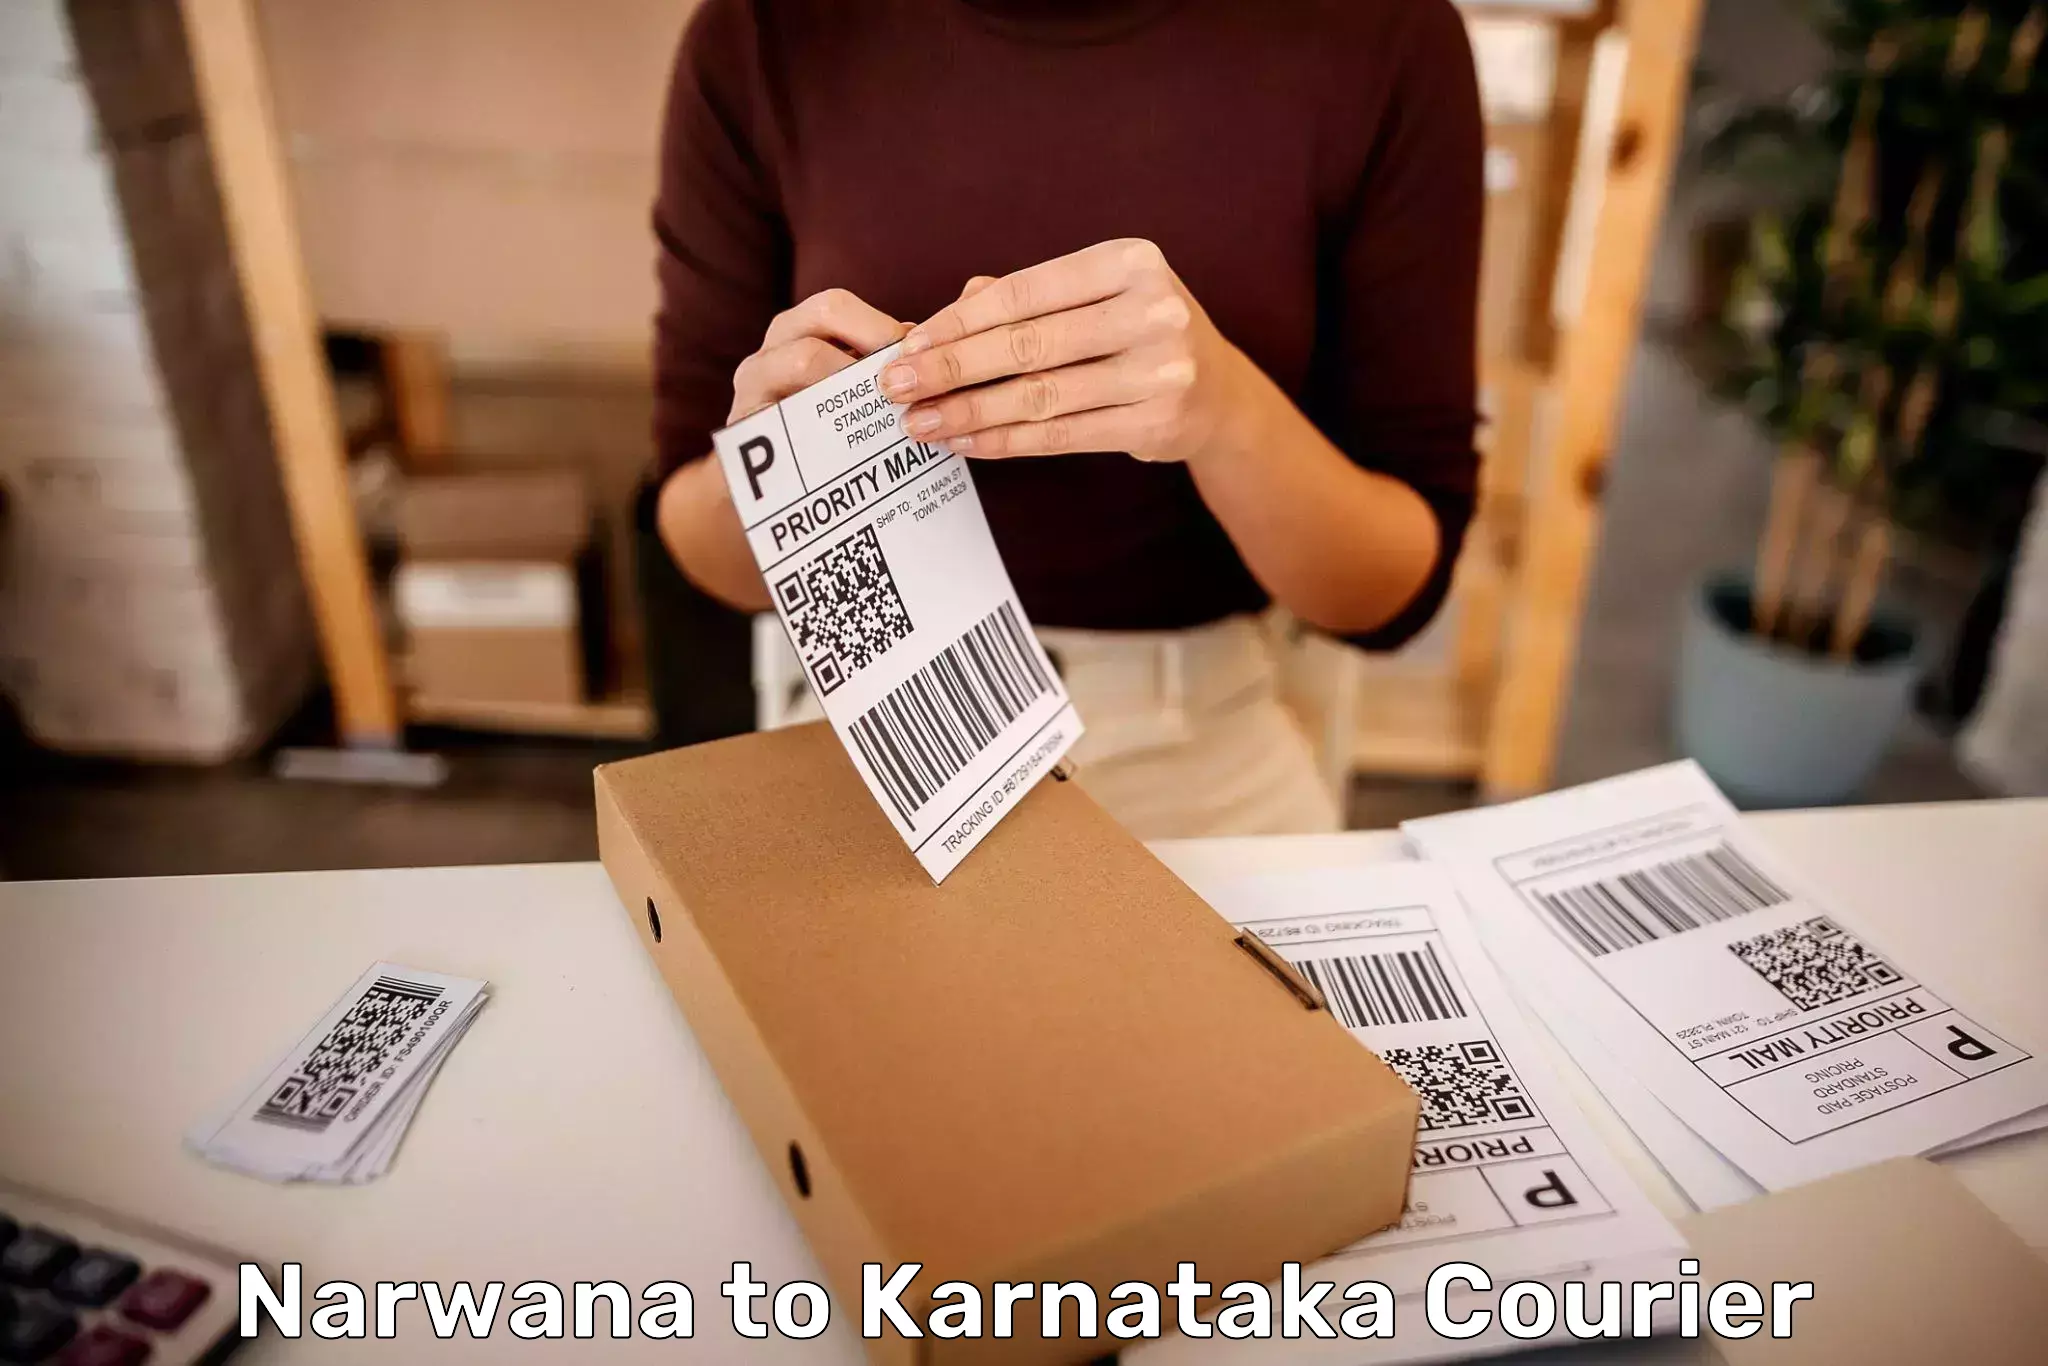 Baggage transport cost Narwana to Karnataka